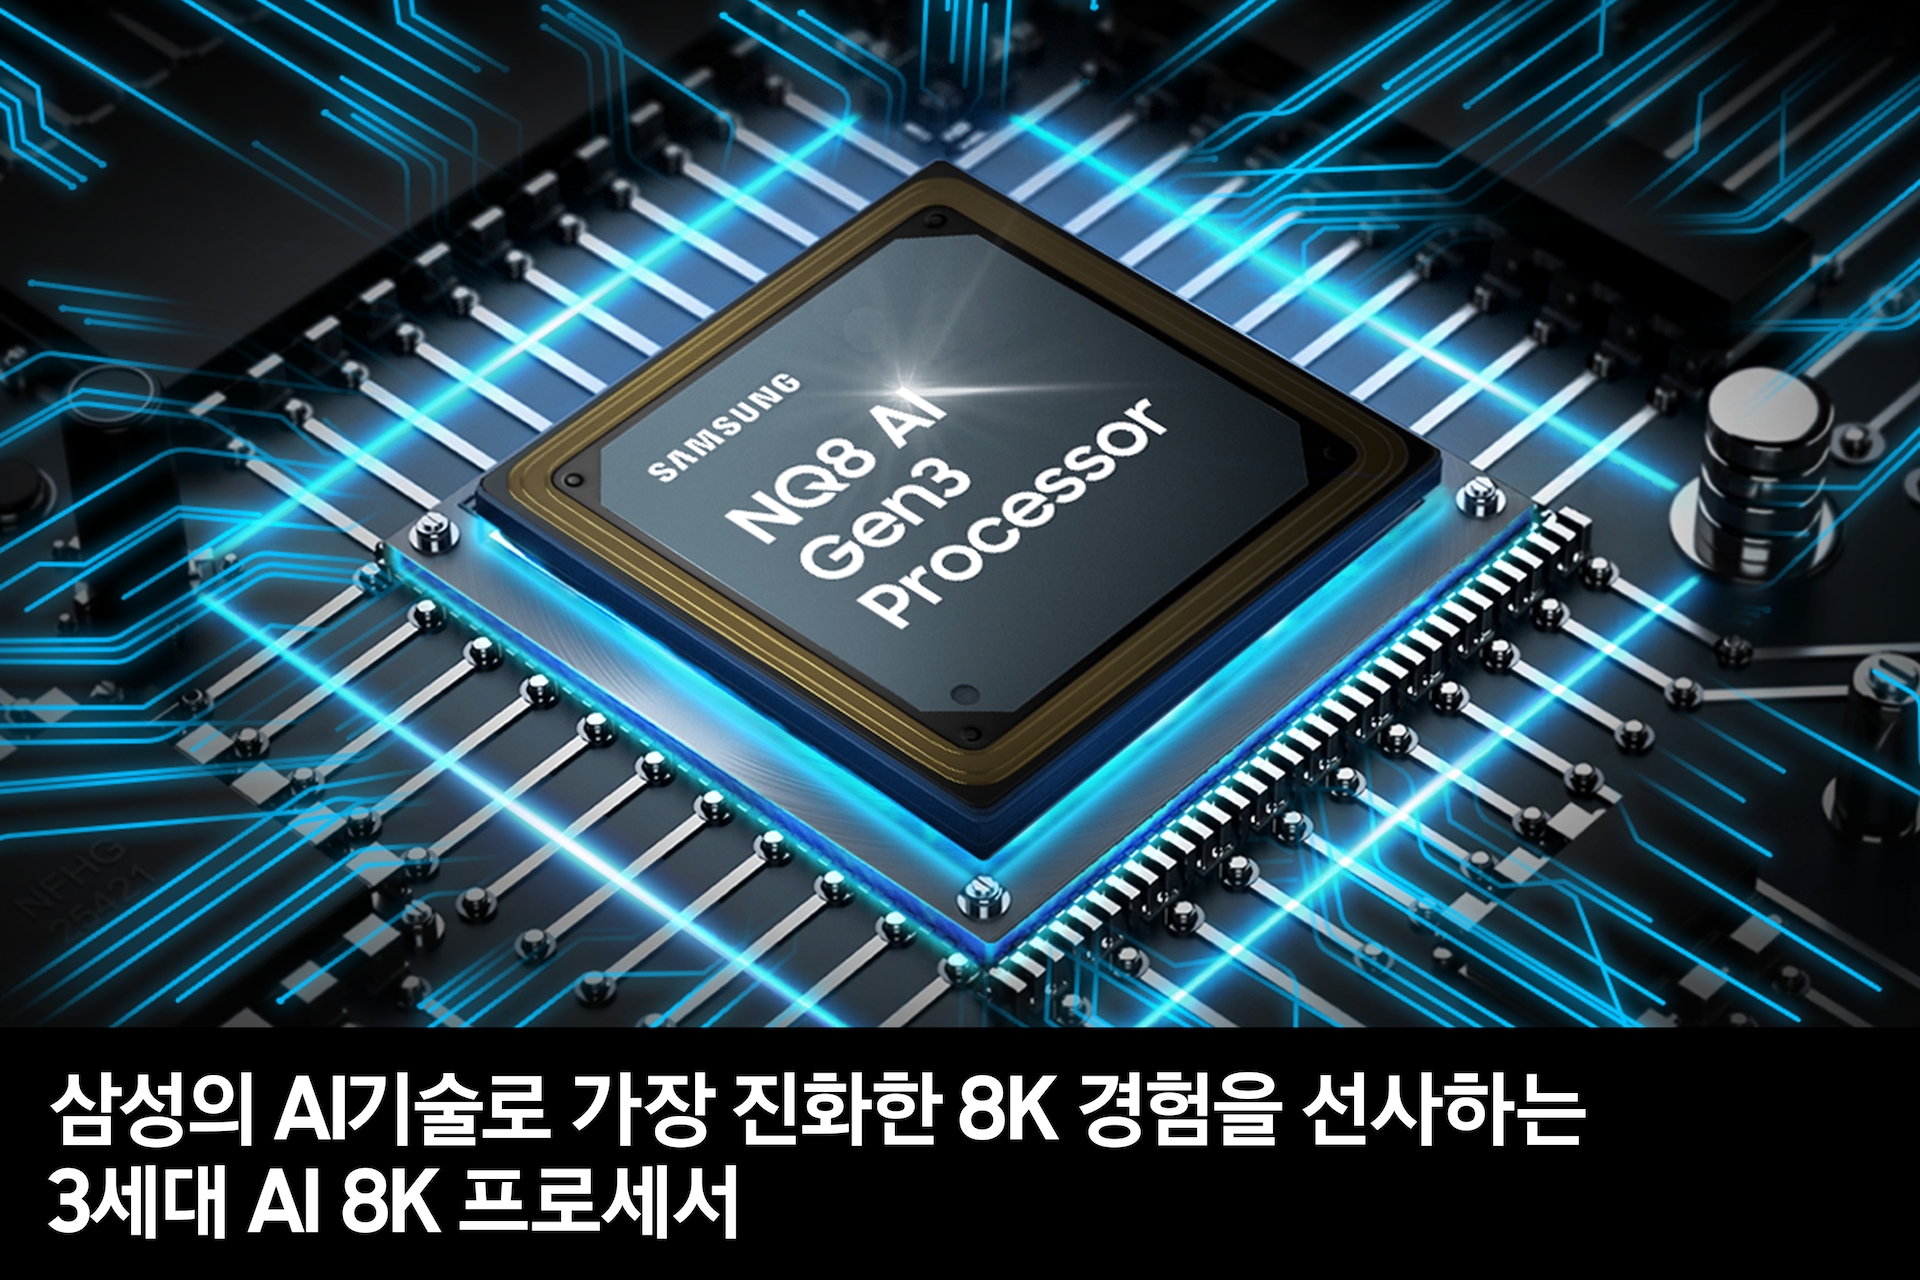 3세대 AI 8K 프로세서 칩이 보입니다. 삼성의 AI기술로 가장 진화한 8K 경험을 선사하는 3세대 AI 8K 프로세서 feature 컷입니다. 